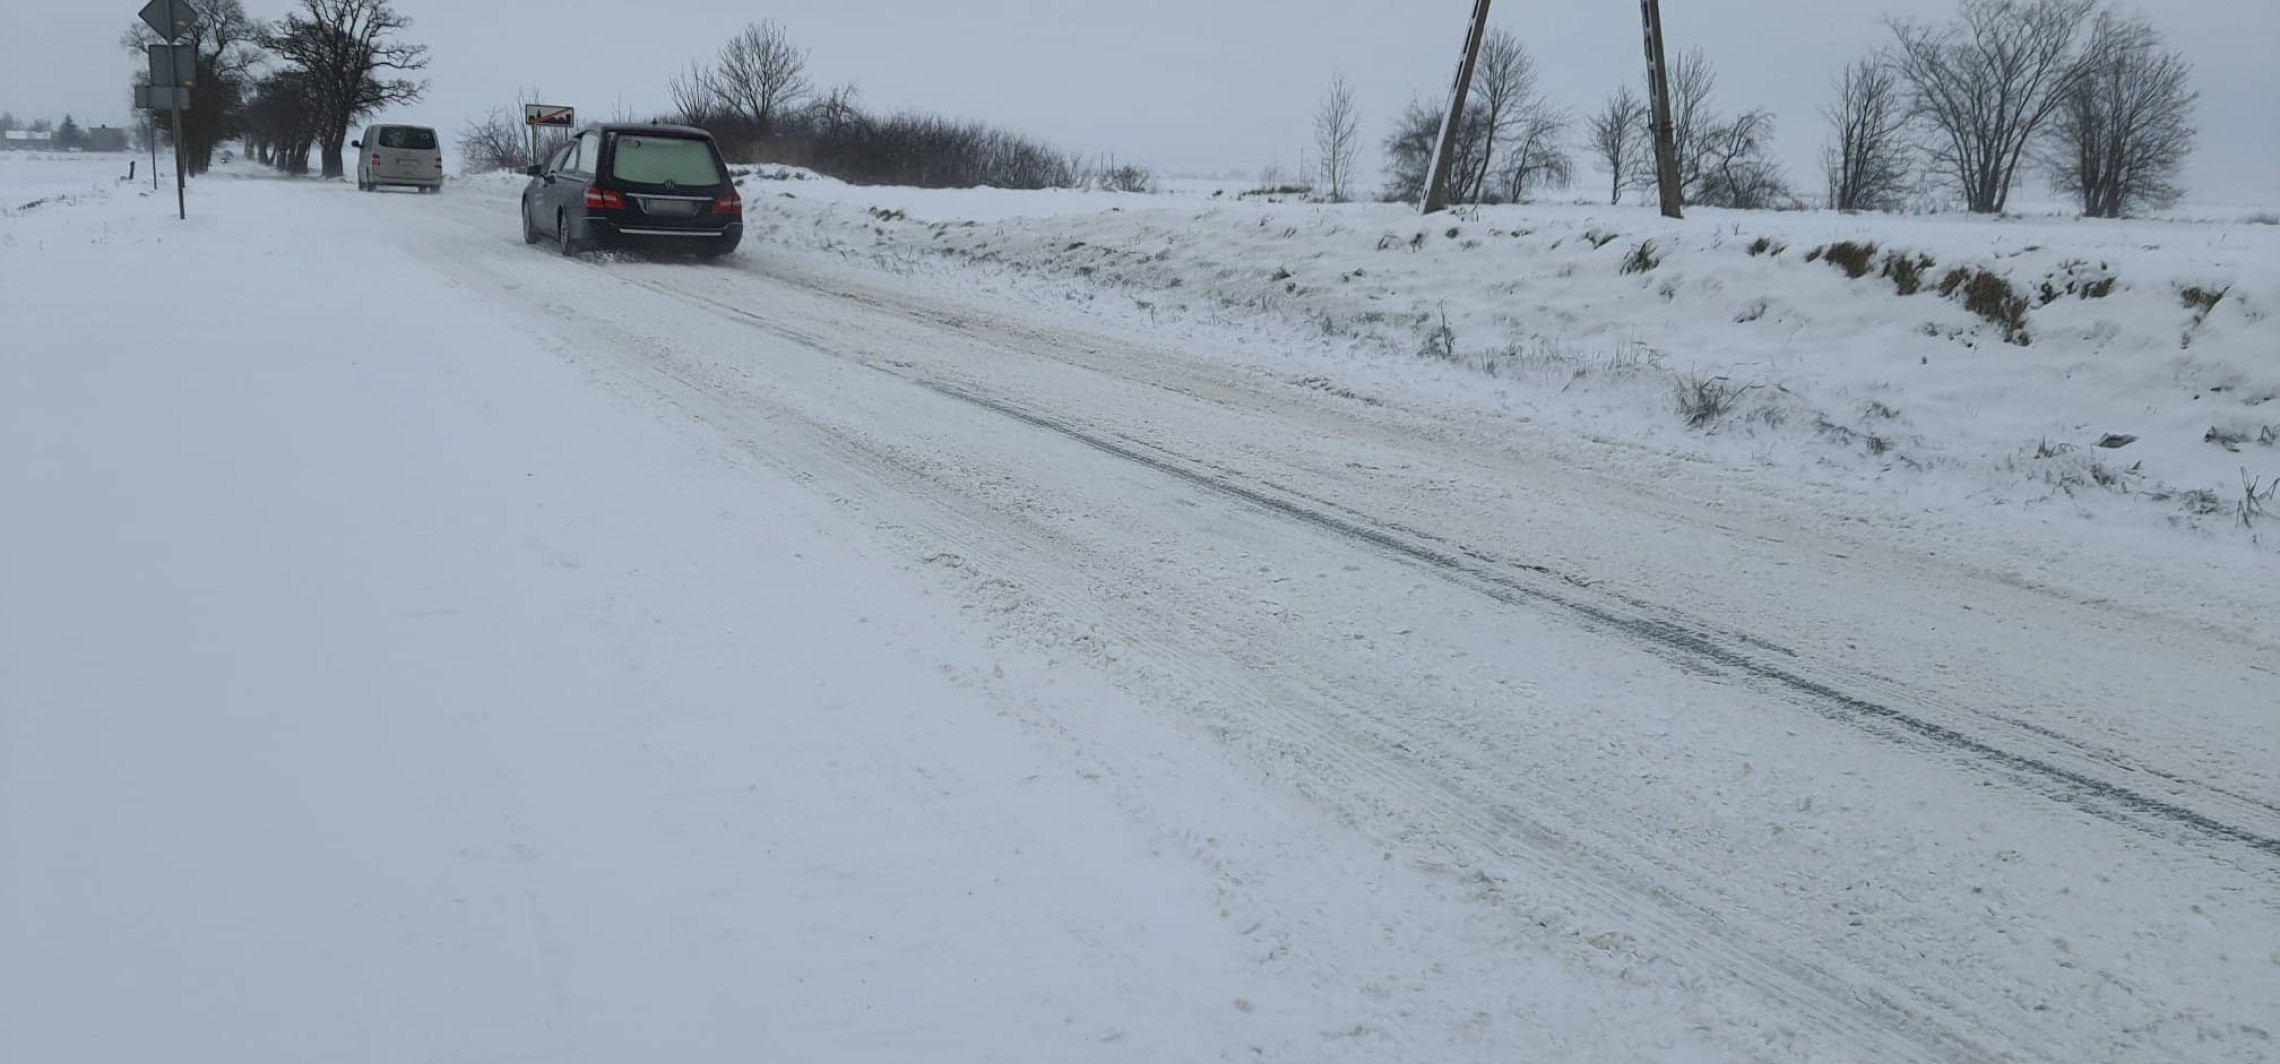 Inowrocław - Coraz trudniejsze warunki na drogach